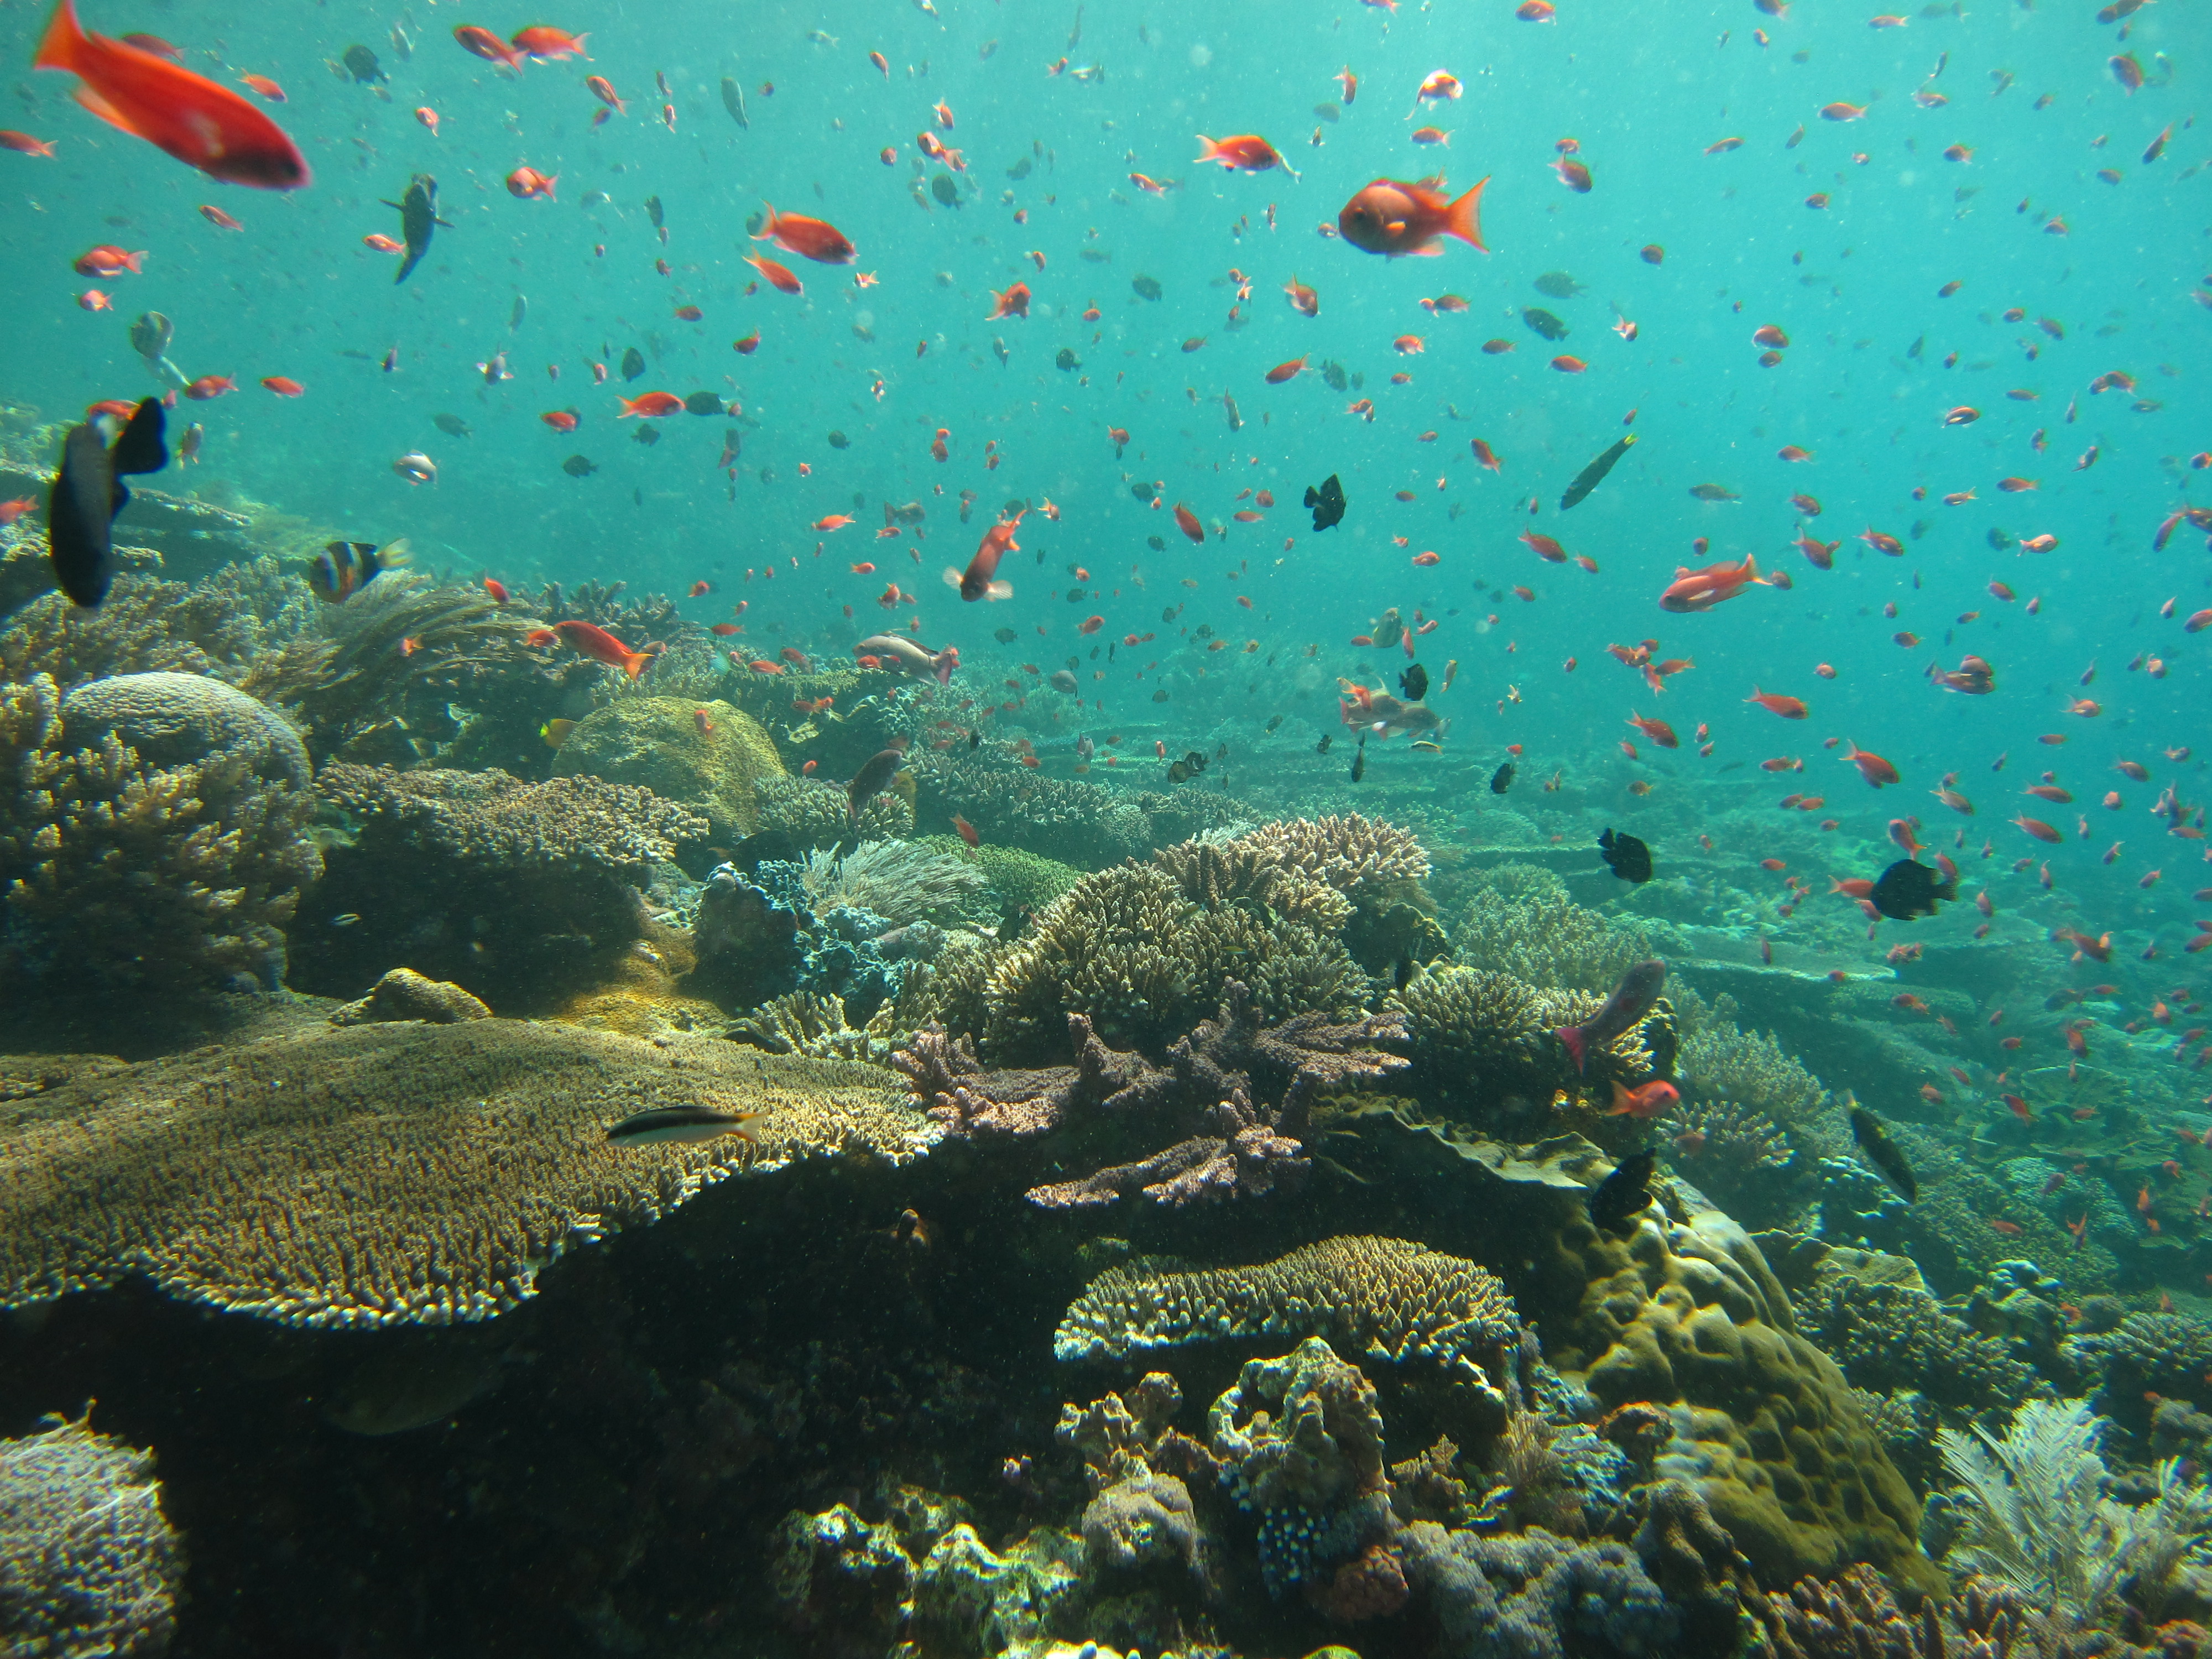 Récif corallien foisonnant de vie, dans la mer d’Andaman, en Thaïlande.